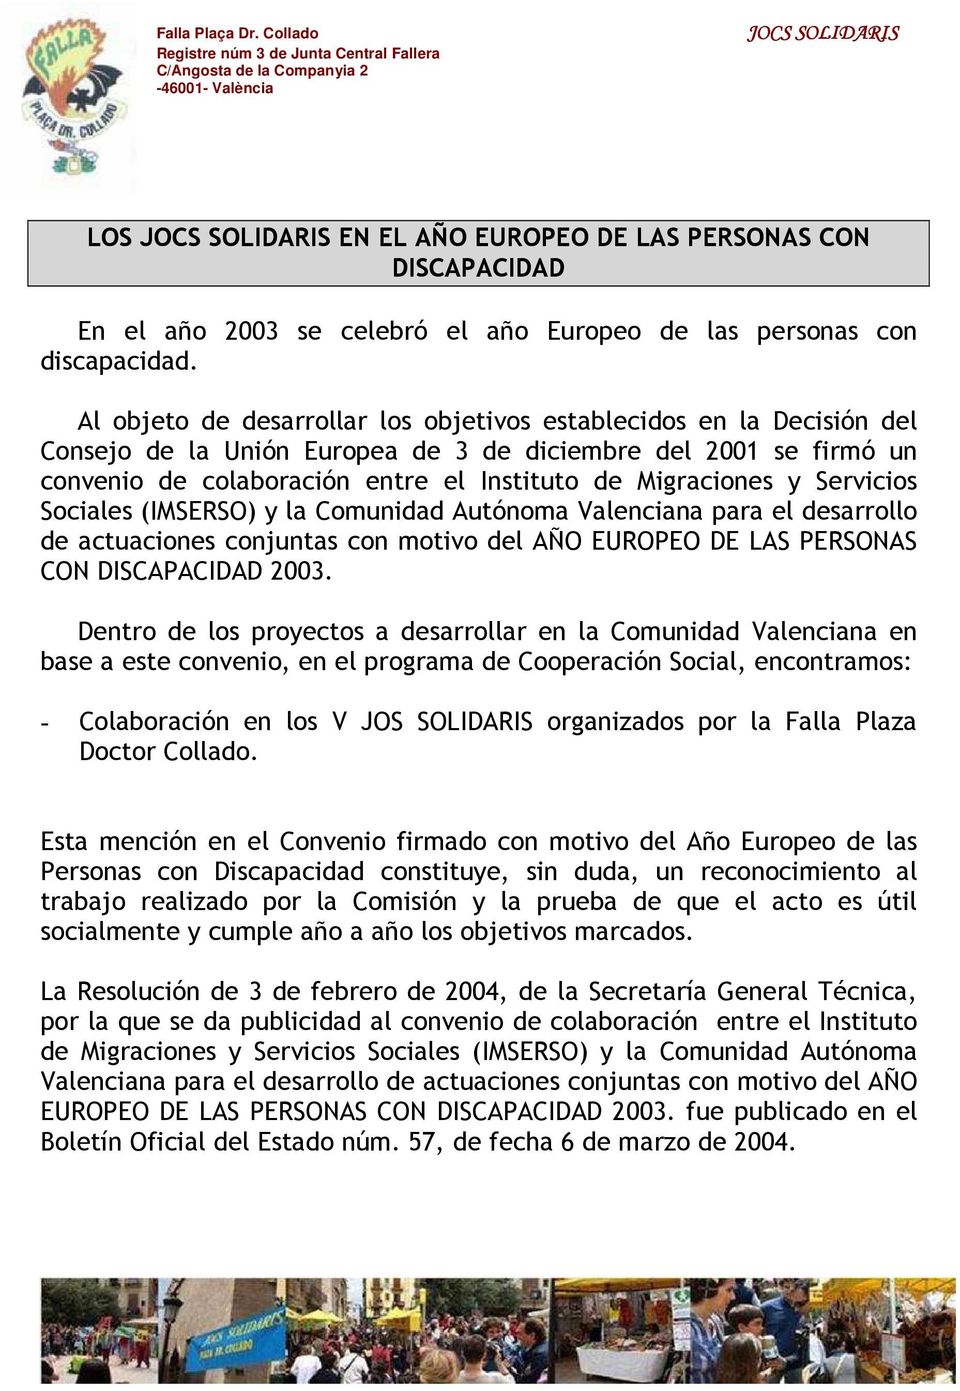 Servicios Sociales (IMSERSO) y la Comunidad Autónoma Valenciana para el desarrollo de actuaciones conjuntas con motivo del AÑO EUROPEO DE LAS PERSONAS CON DISCAPACIDAD 2003.